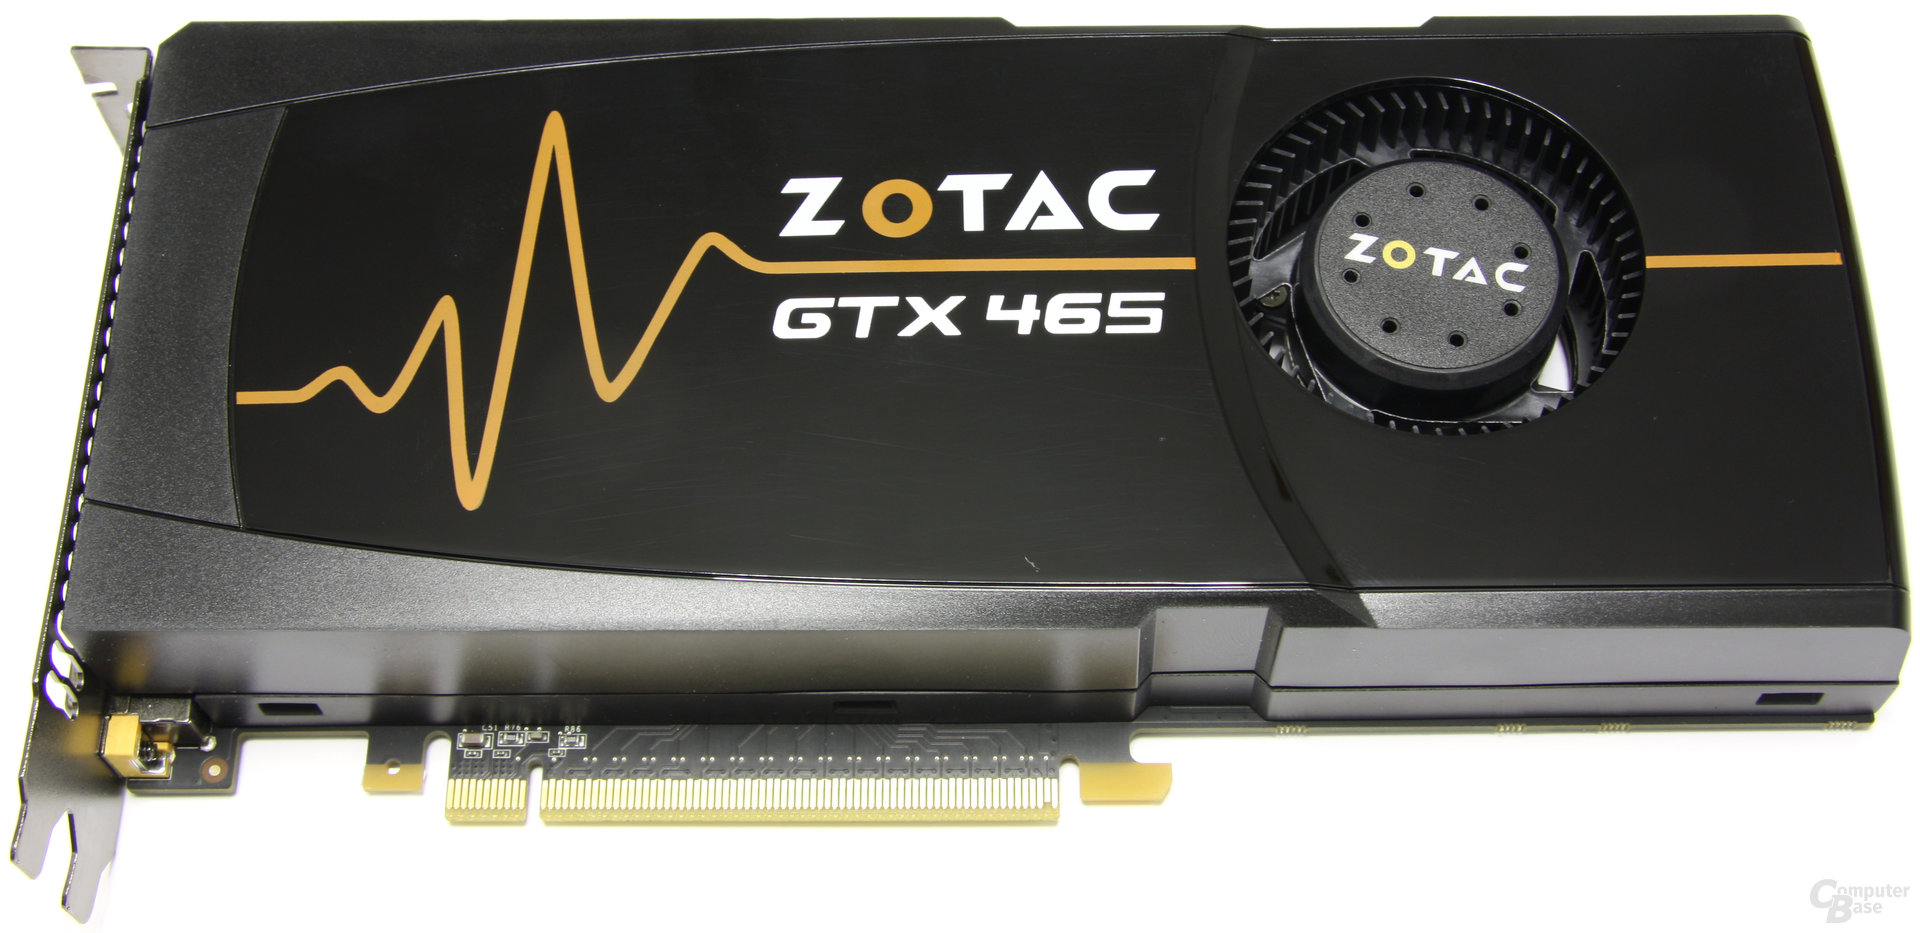 Zotac GeForce GTX 465